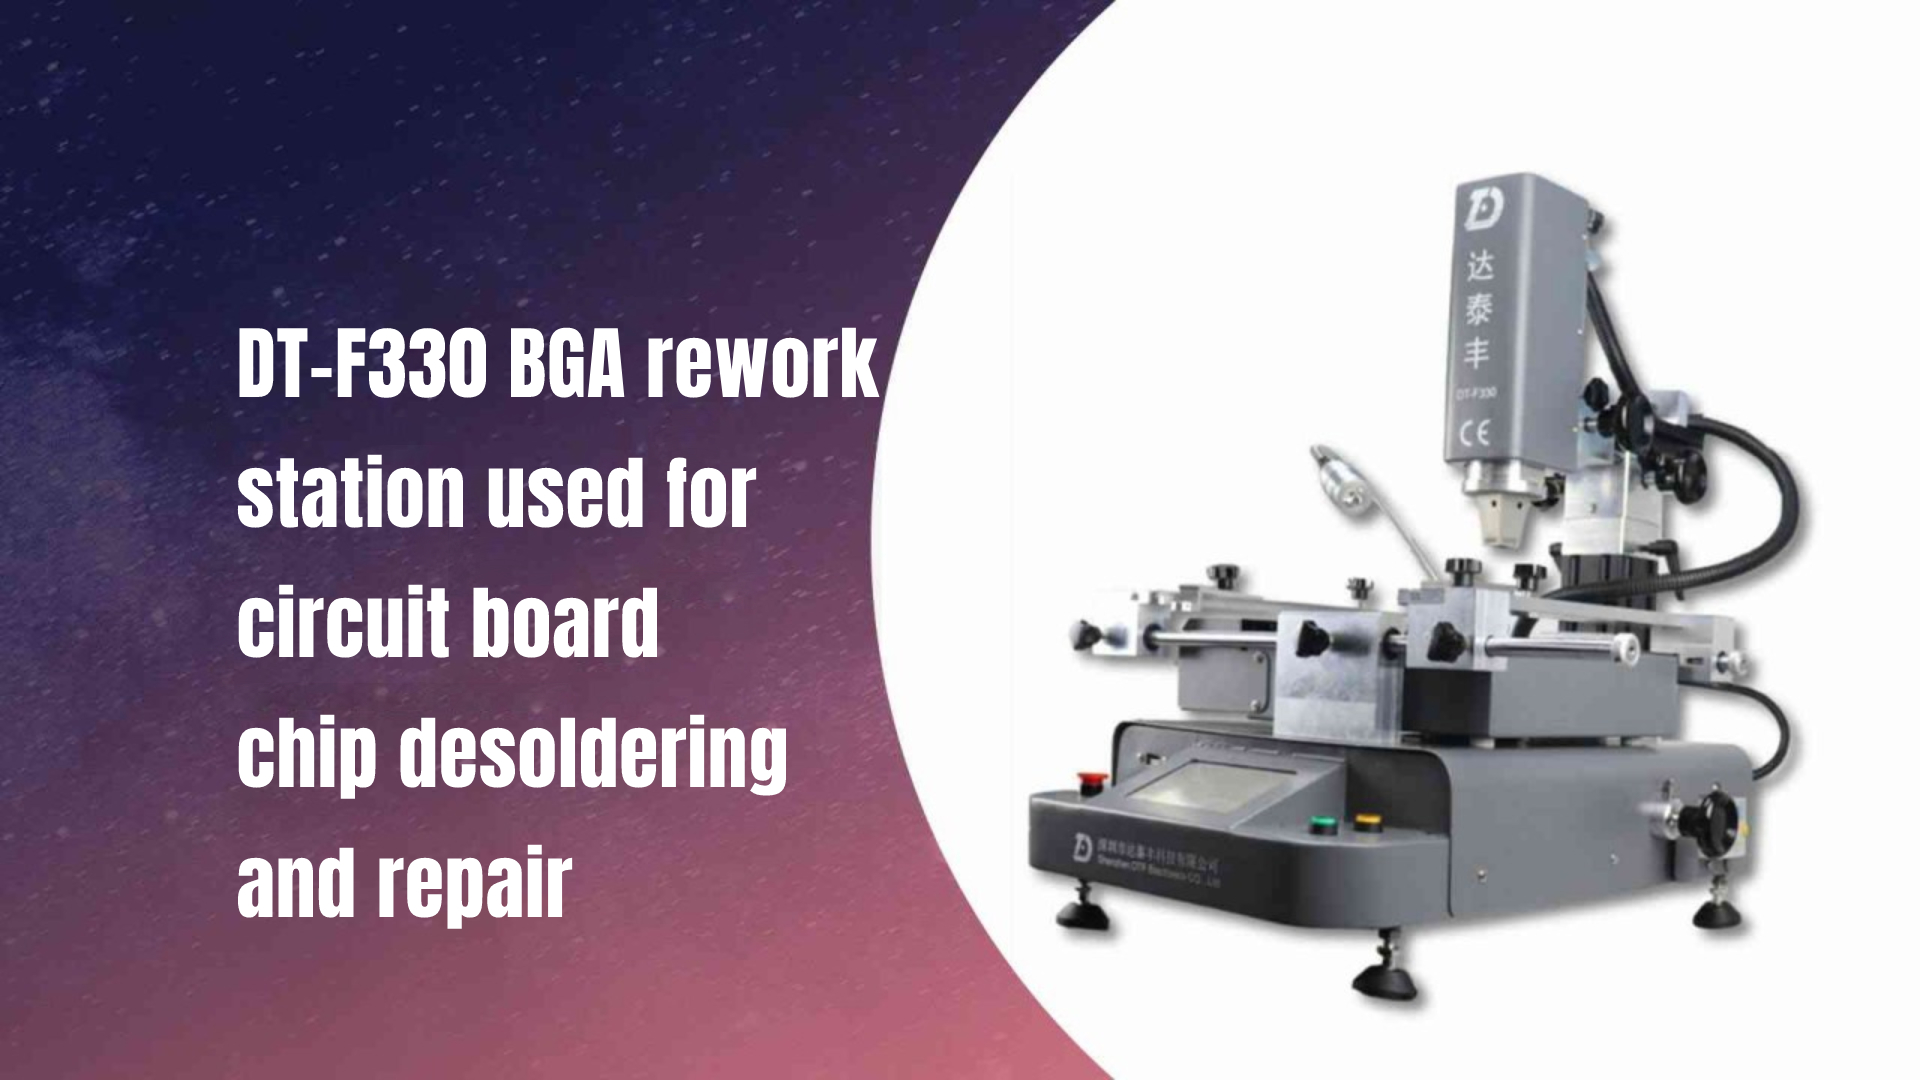 डीटी-एफ 330 बीजीए रीववर्क स्टेशन सर्किट बोर्ड चिप desoldering और मरम्मत के लिए उपयोग किया जाता है